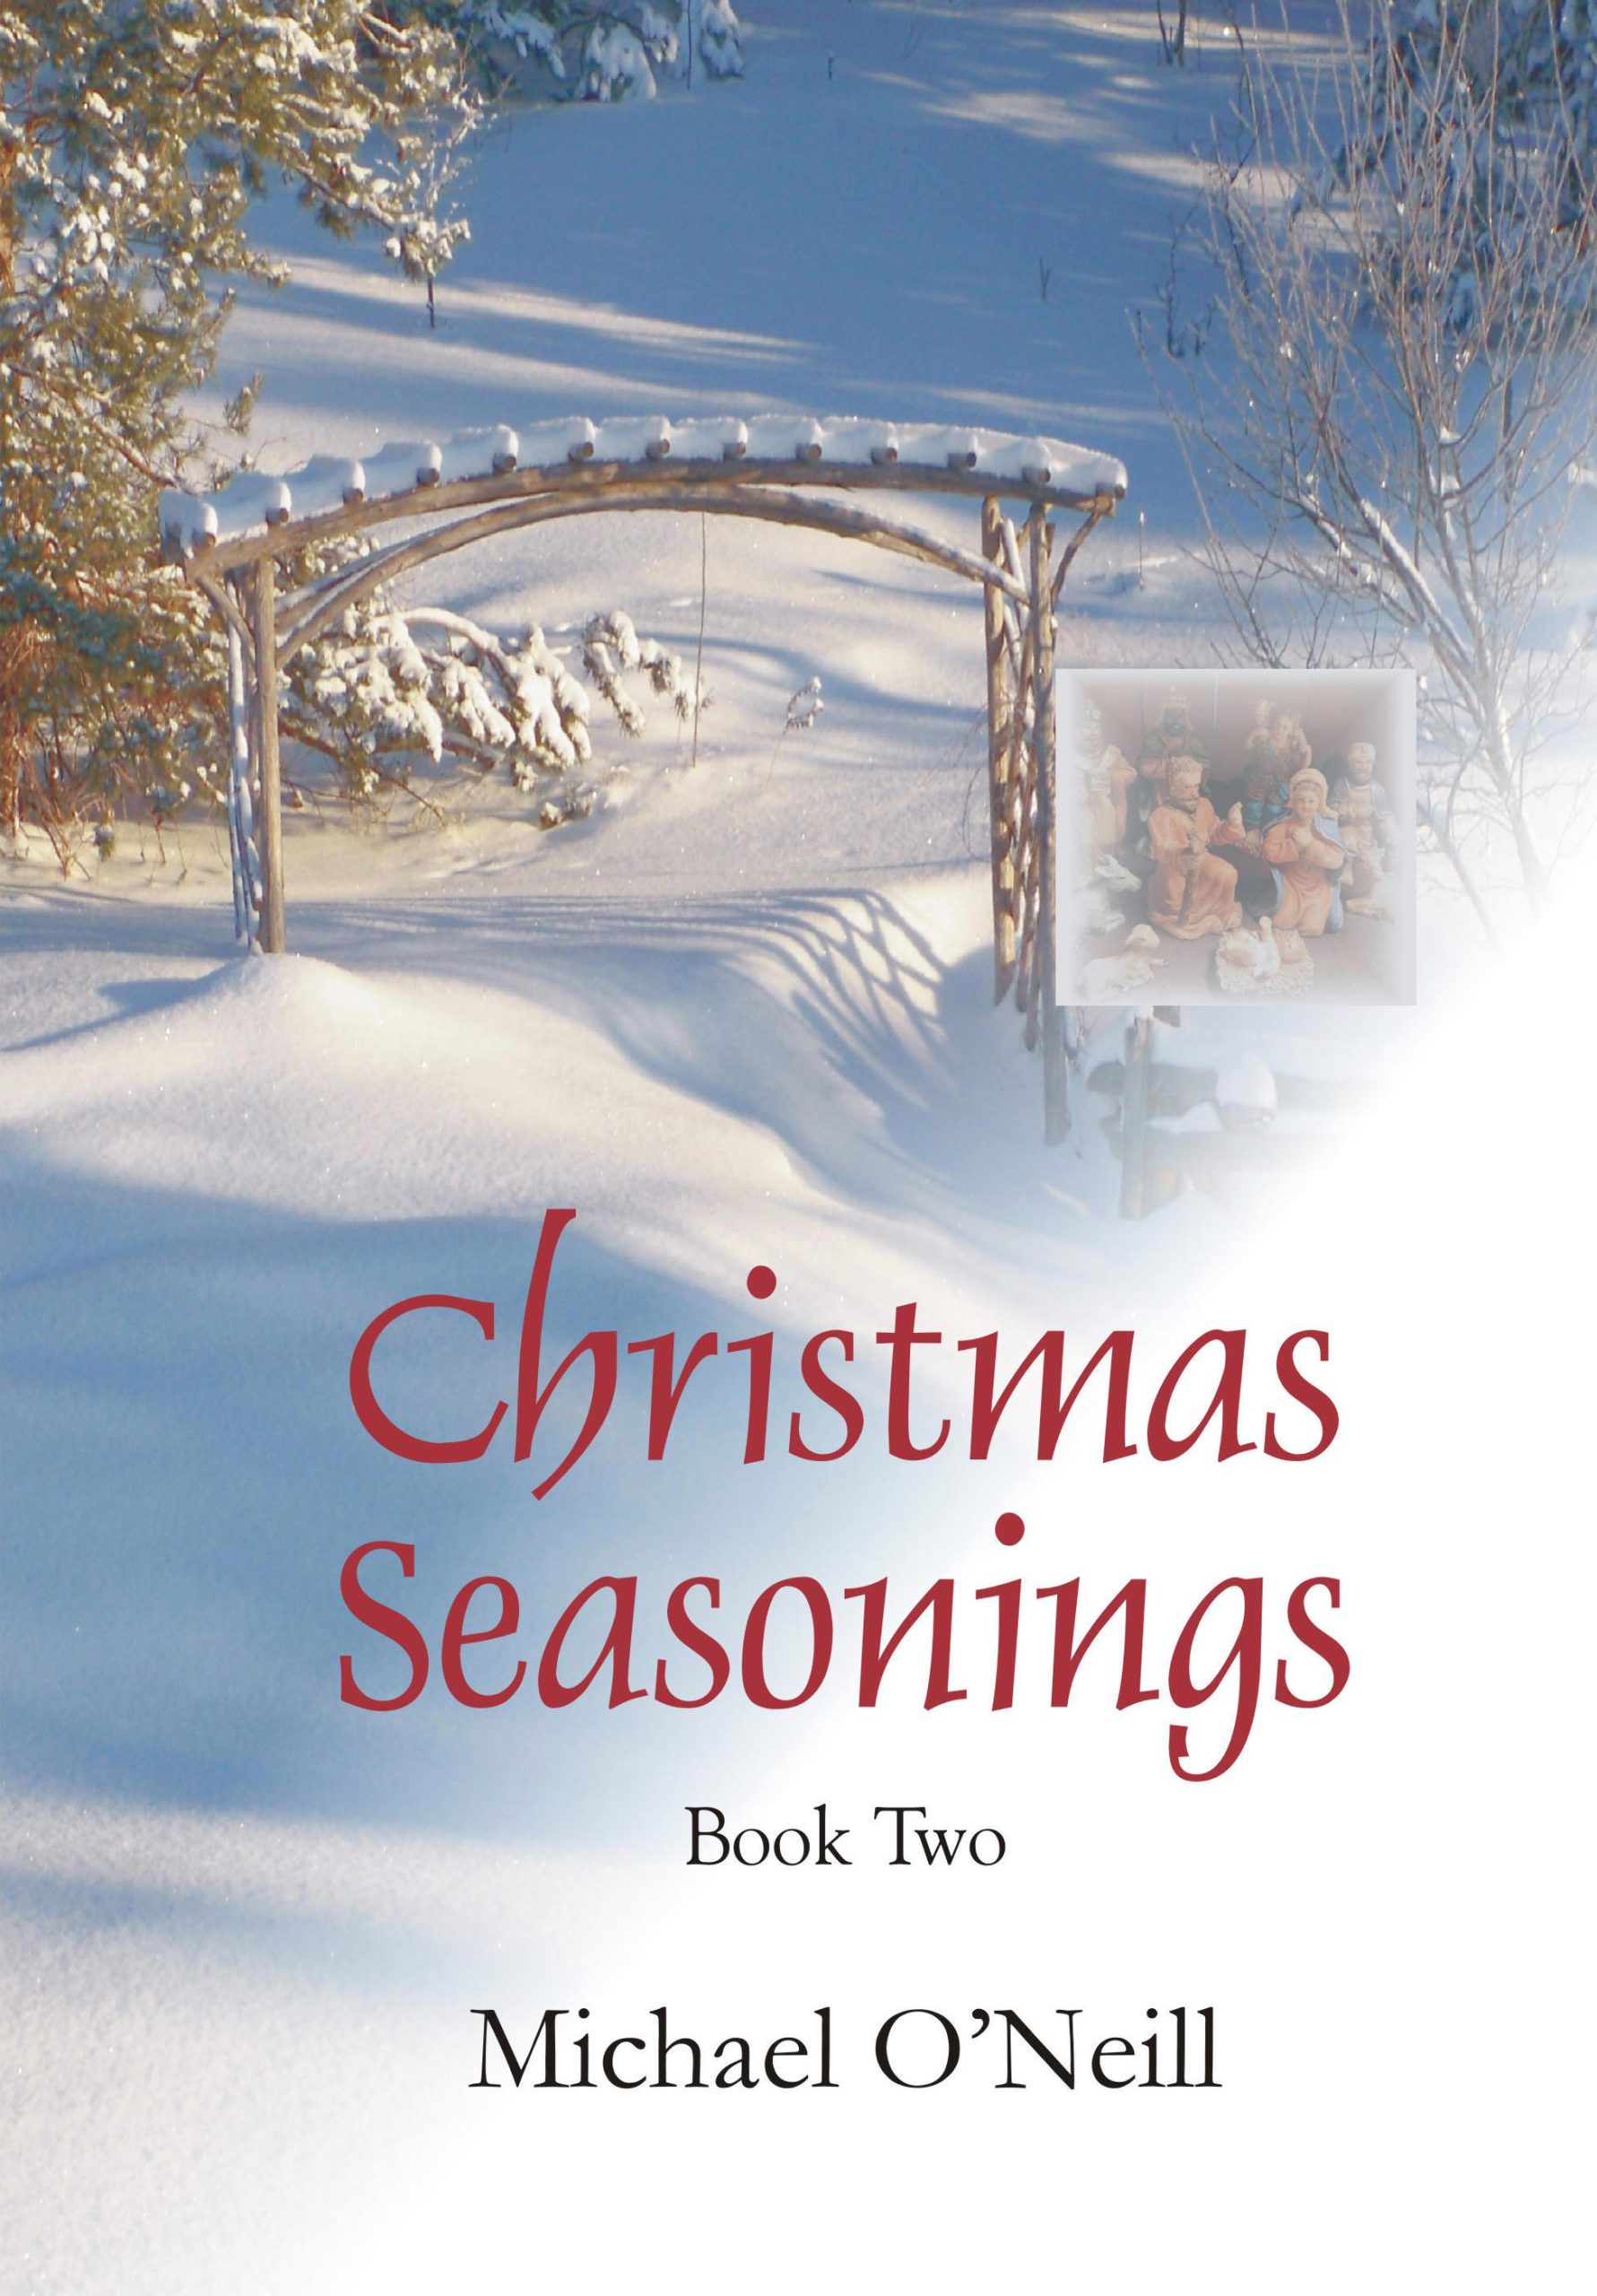 Christmas Seasonings 2